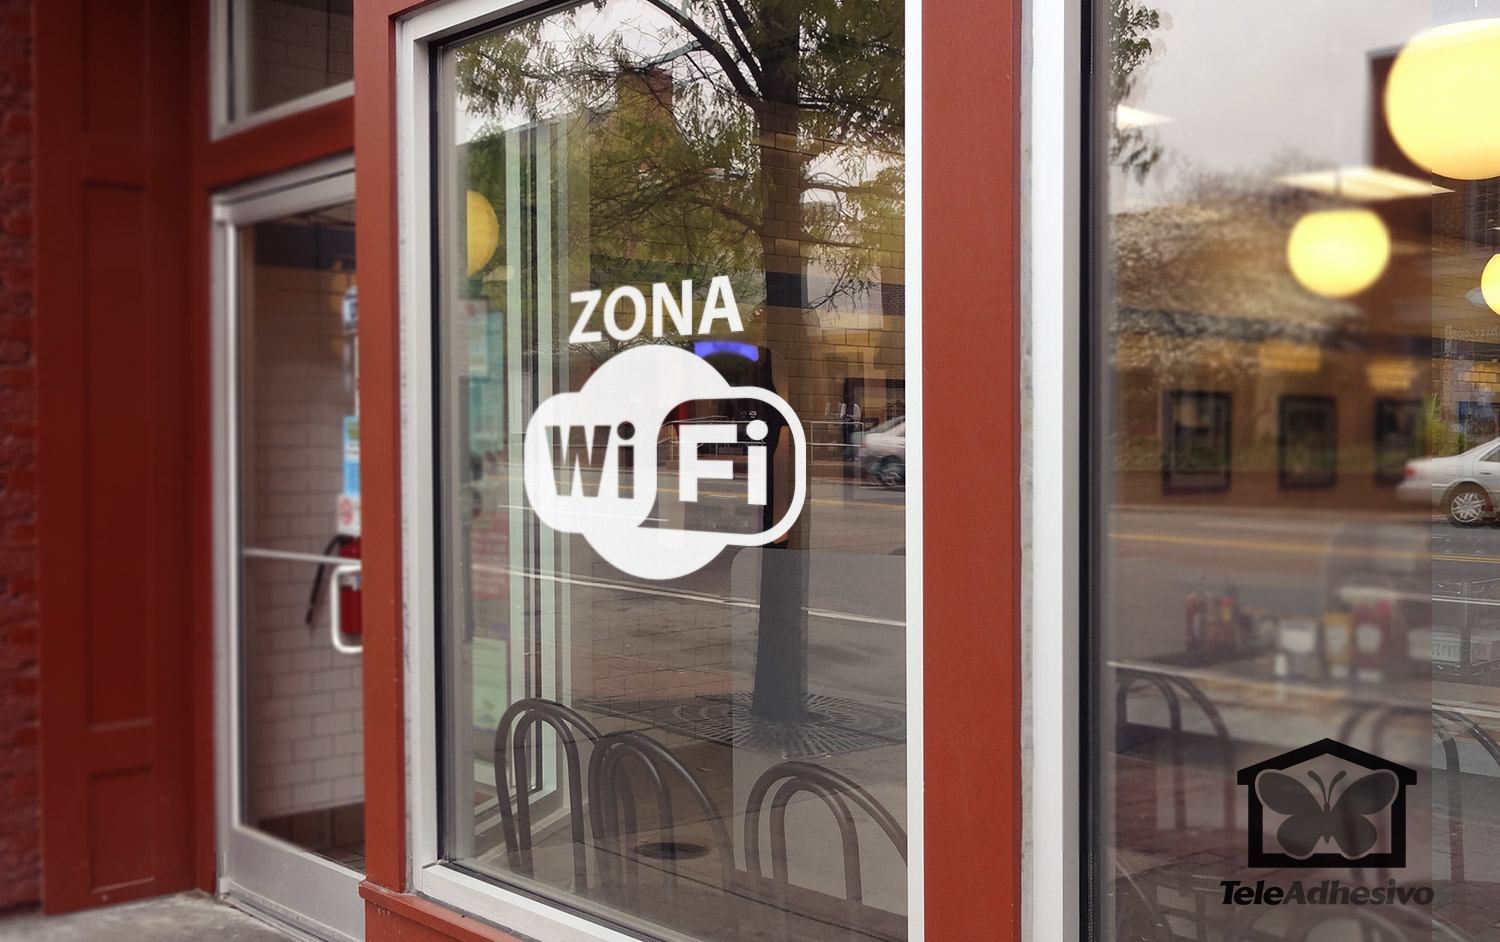 Wall Stickers: Zona Wifi